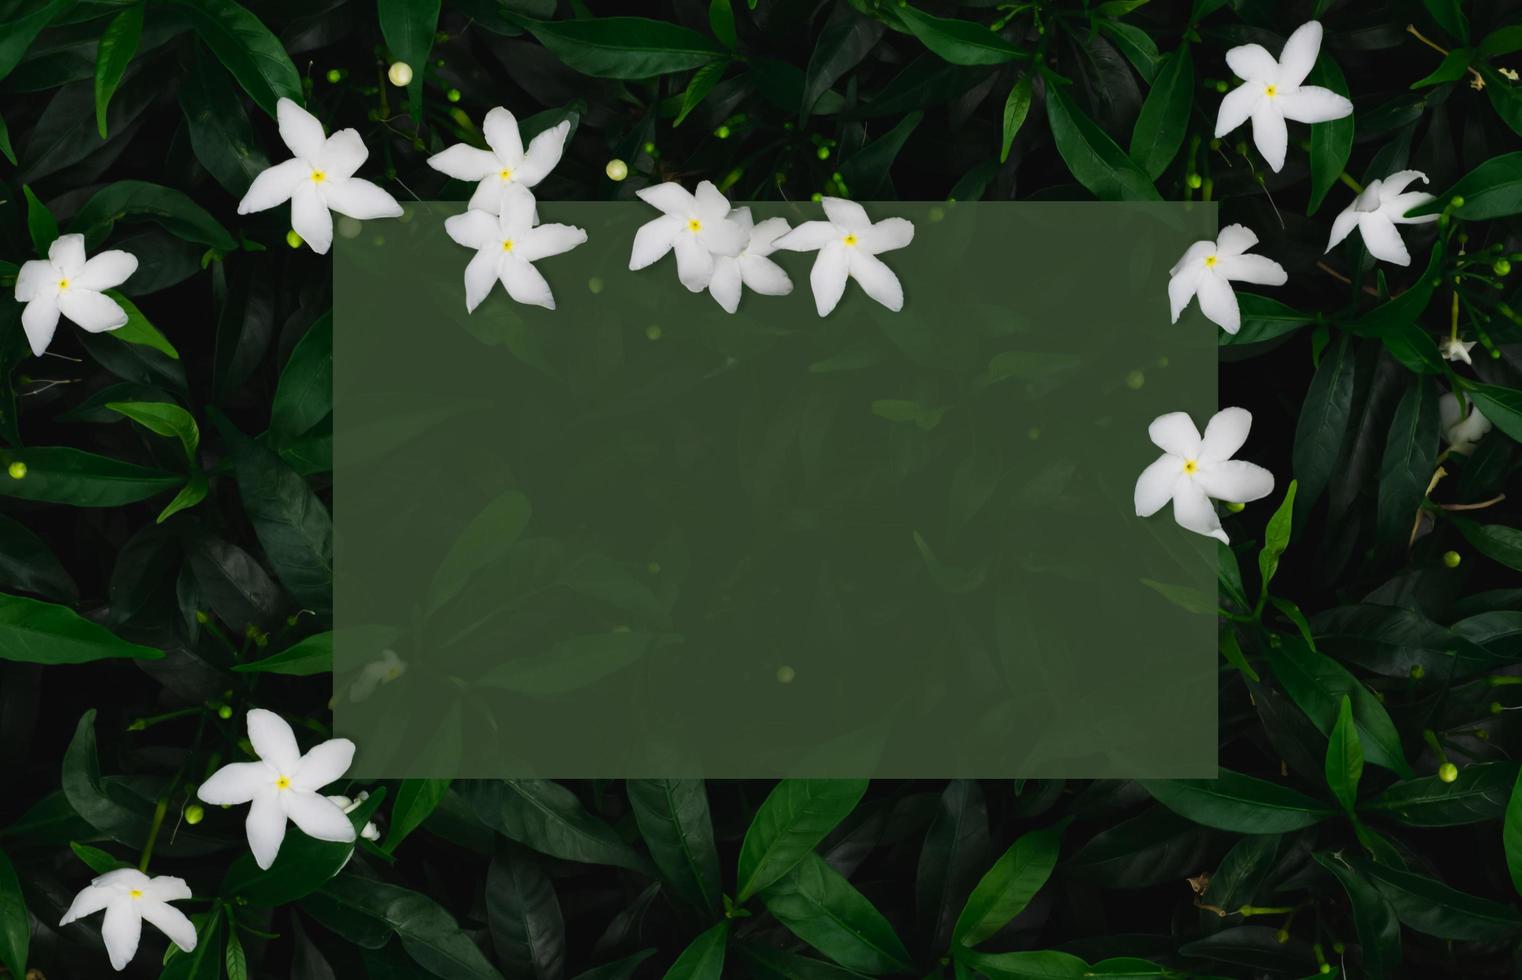 grön bakgrund av löv med vita blommor som har genomskinligt grönt fyrkantigt utrymme för text. foto